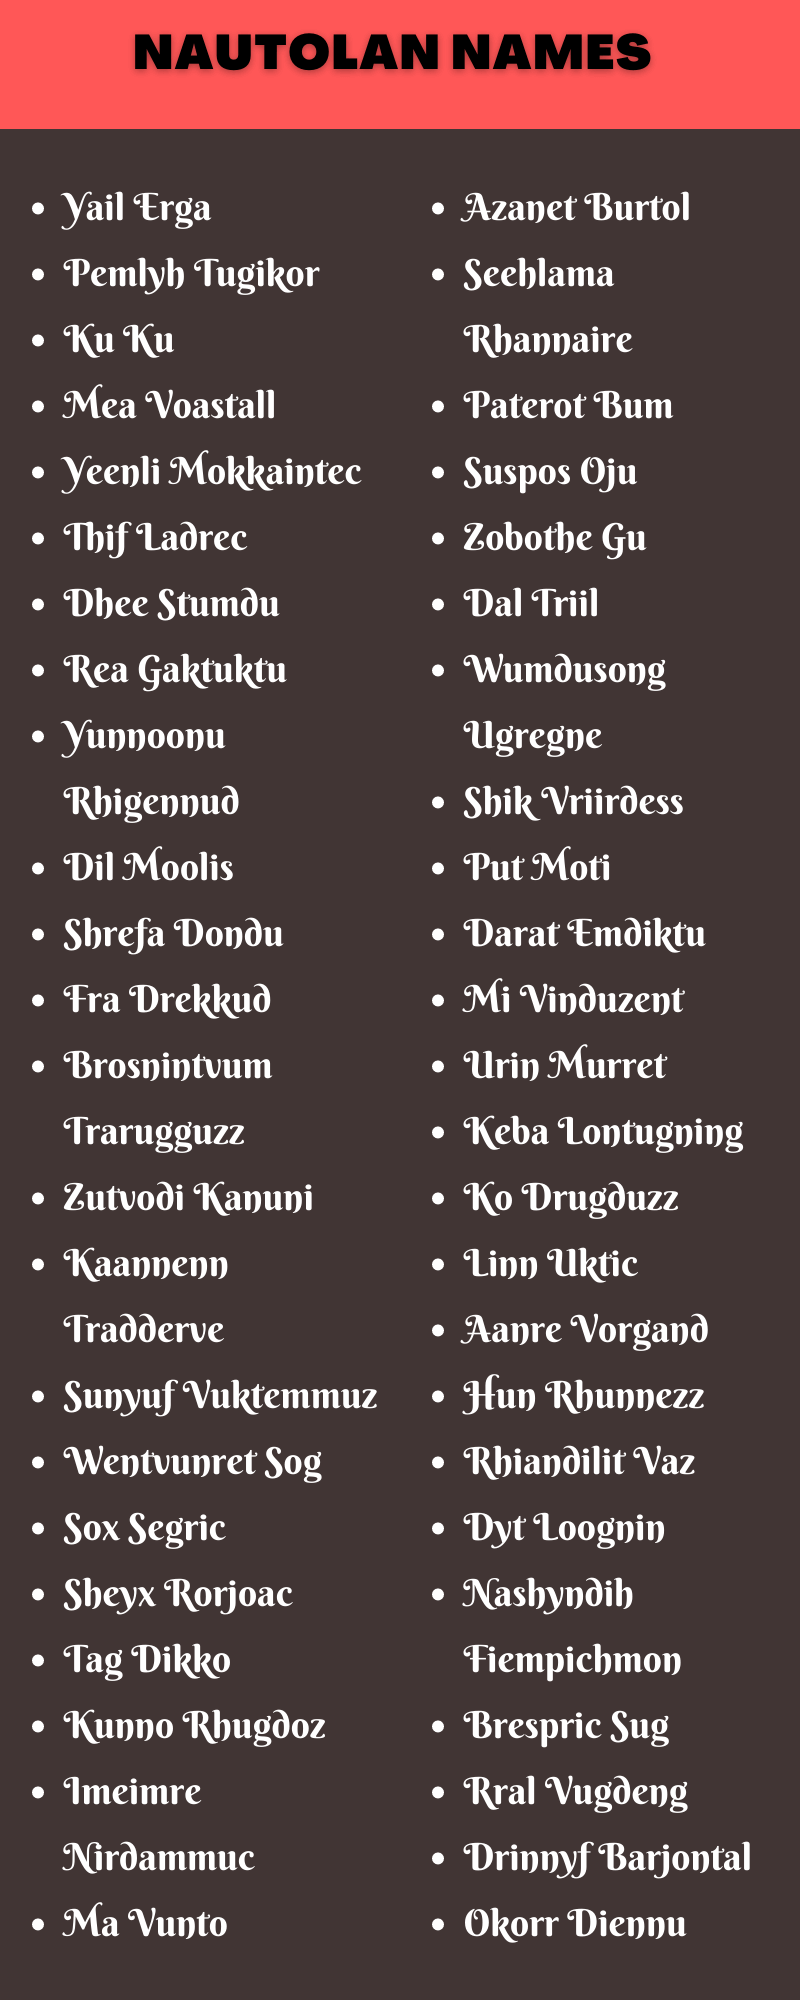 Nautolan Names